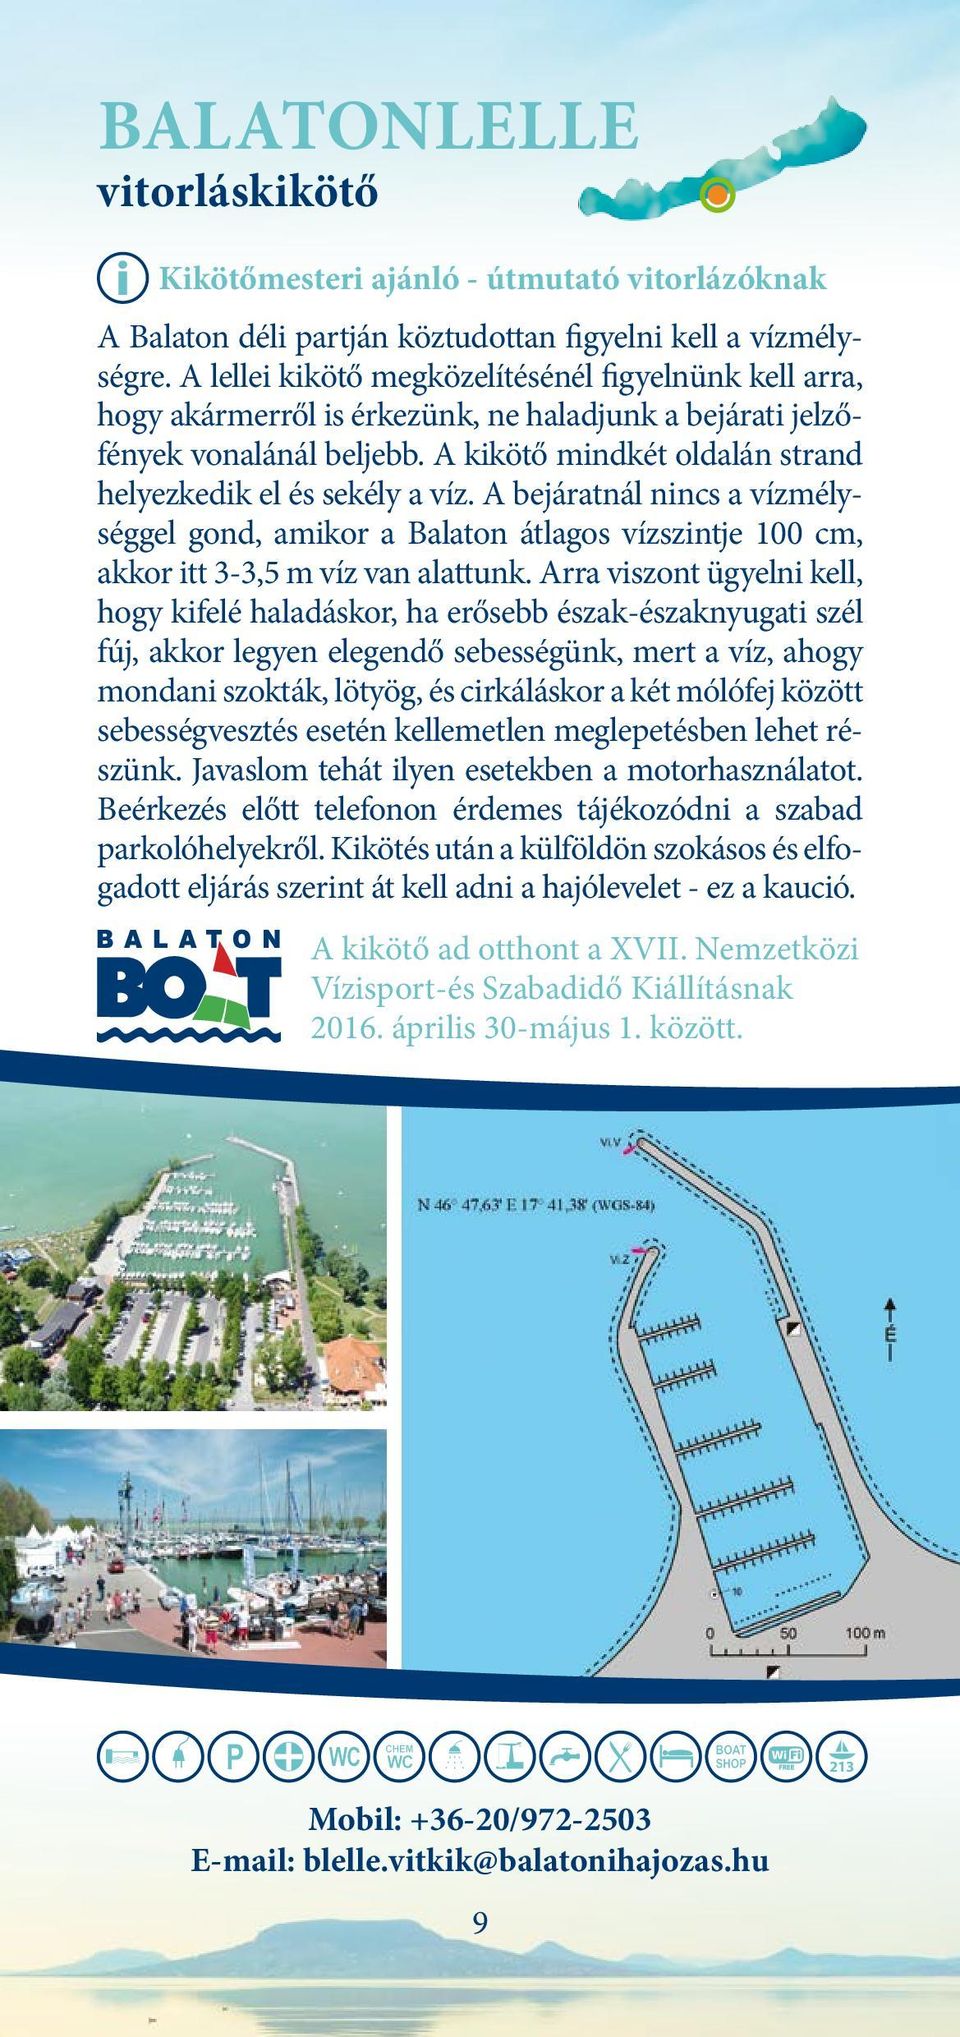 A kikötő mindkét oldalán strand helyezkedik el és sekély a víz. A bejáratnál nincs a vízmélységgel gond, amikor a Balaton átlagos vízszintje 100 cm, akkor itt 3-3,5 m víz van alattunk.